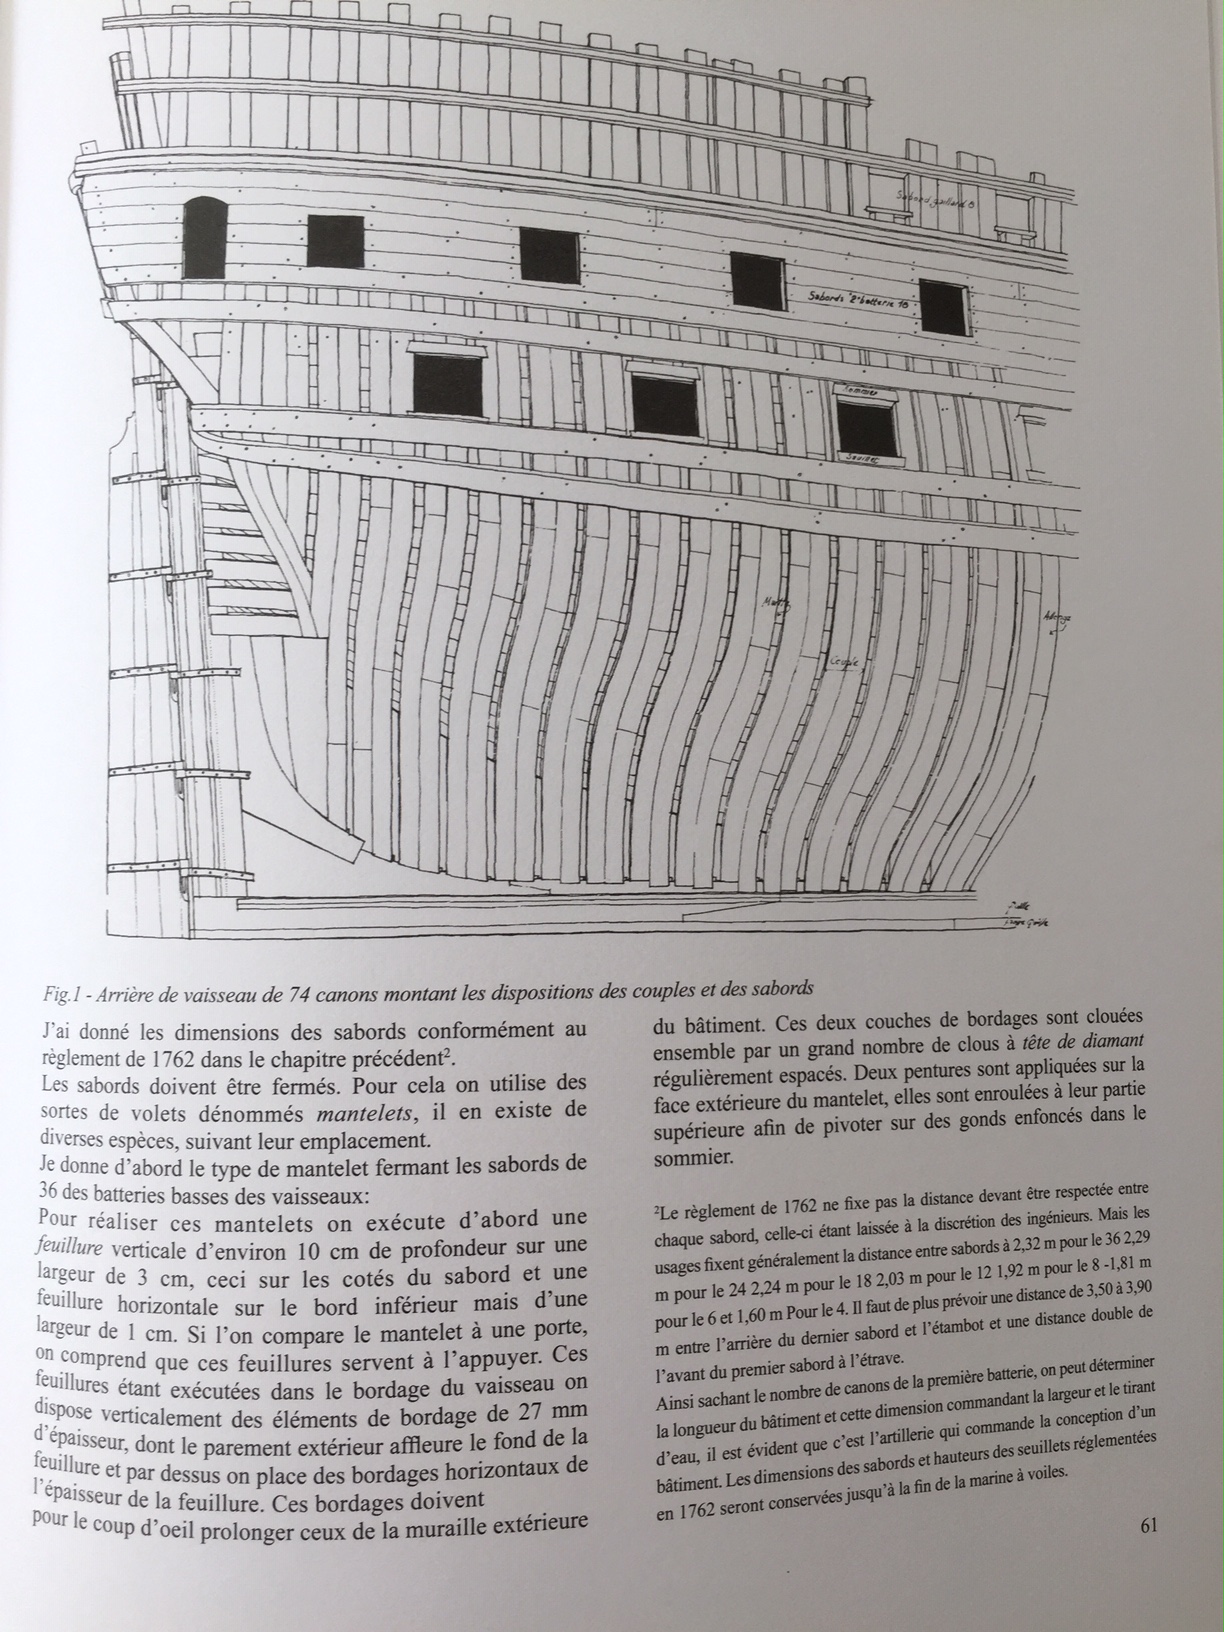 Frégate Danae de 12 - 1755 [conception 3D/scratch bois 1/48°] de Yoann gui - Page 3 Img_1818